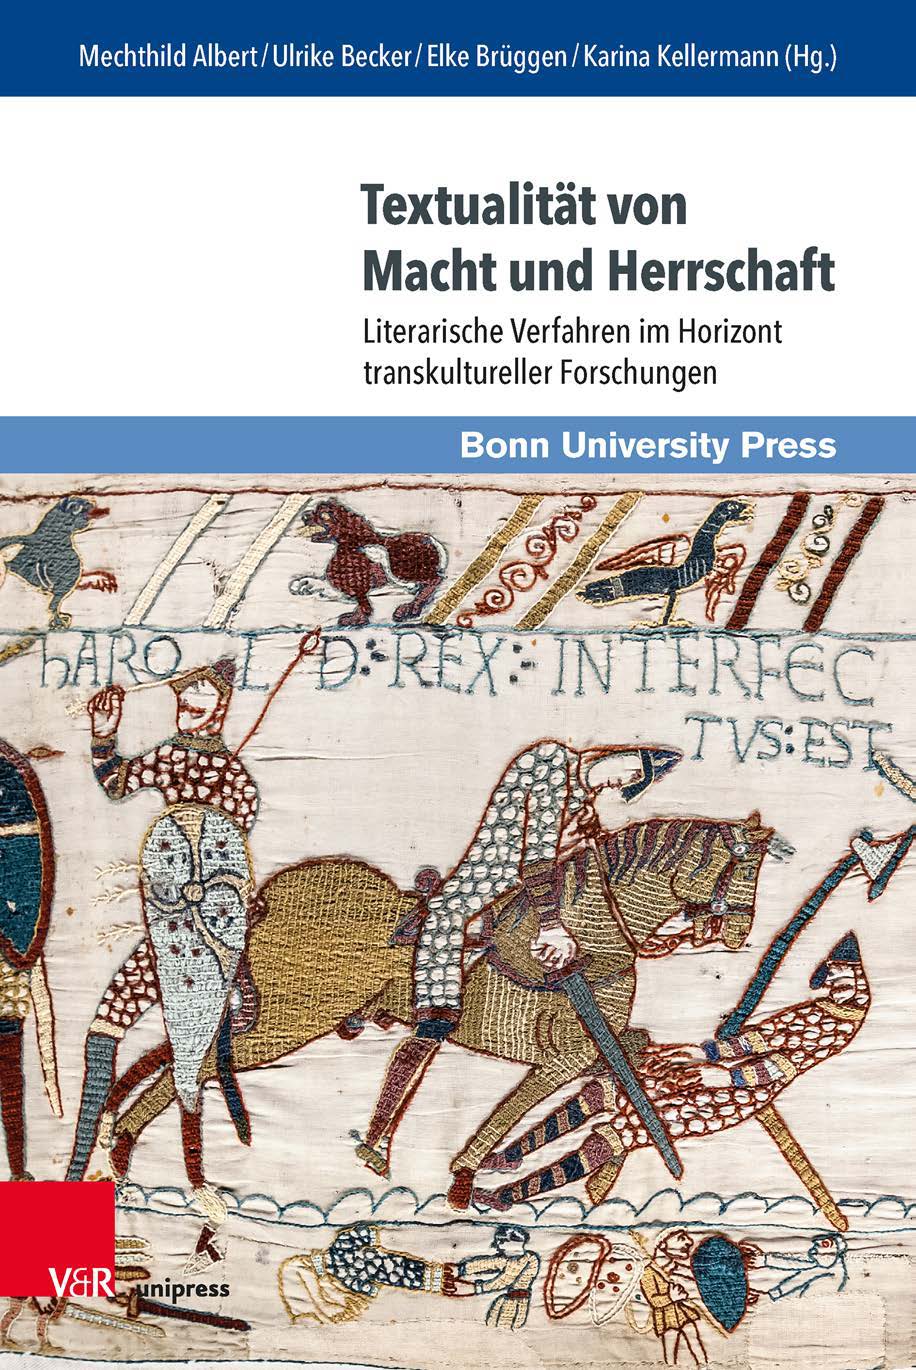 Imagen de portada del libro Textualität von Macht und Herrschaft